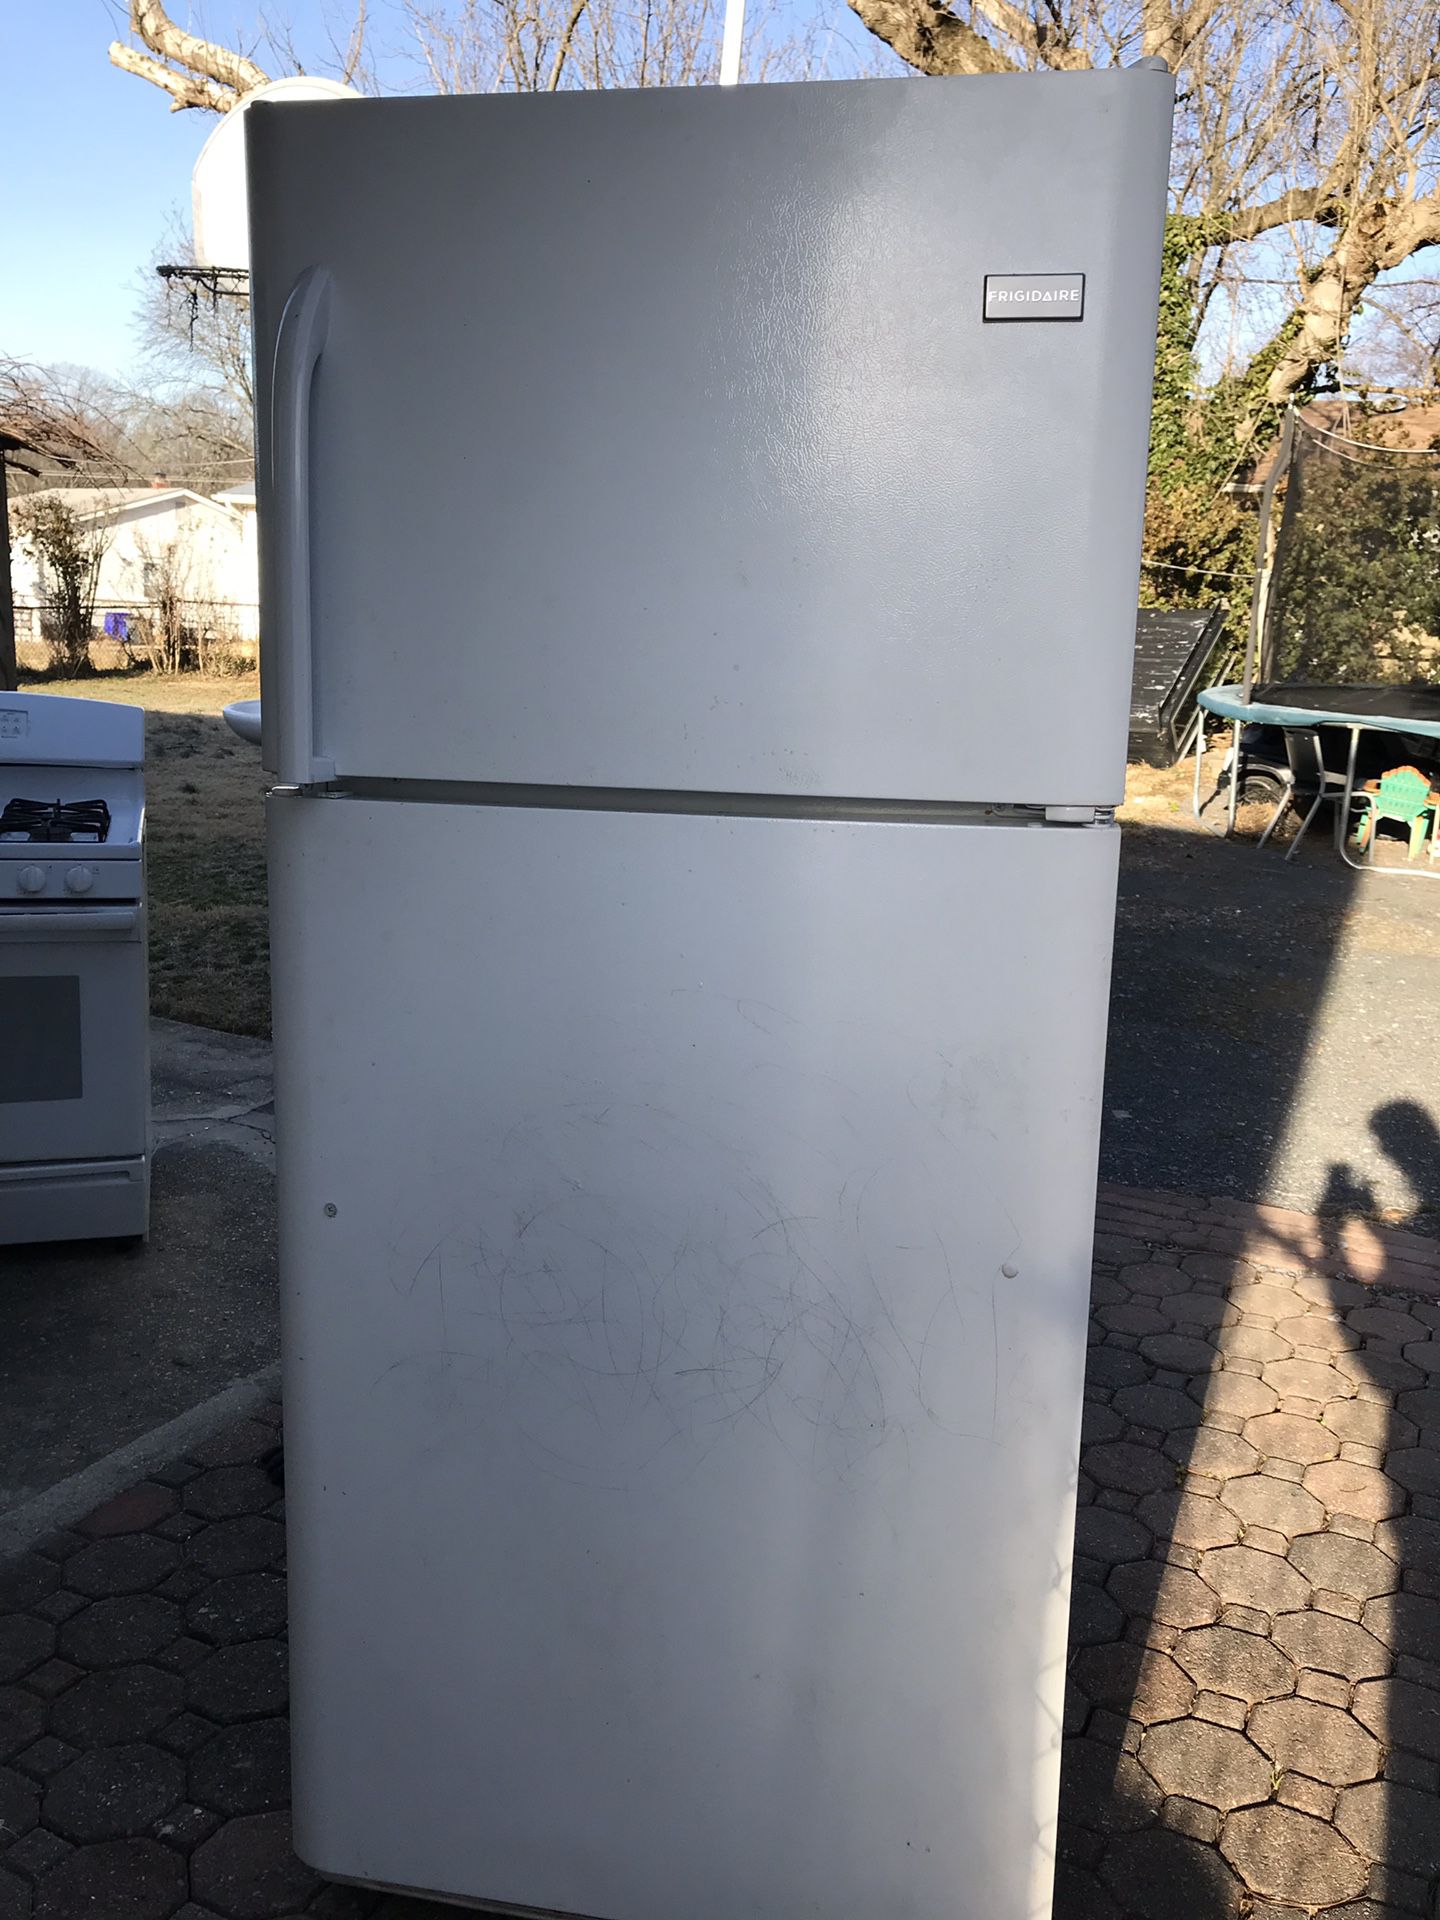 Frigidaire refigerator